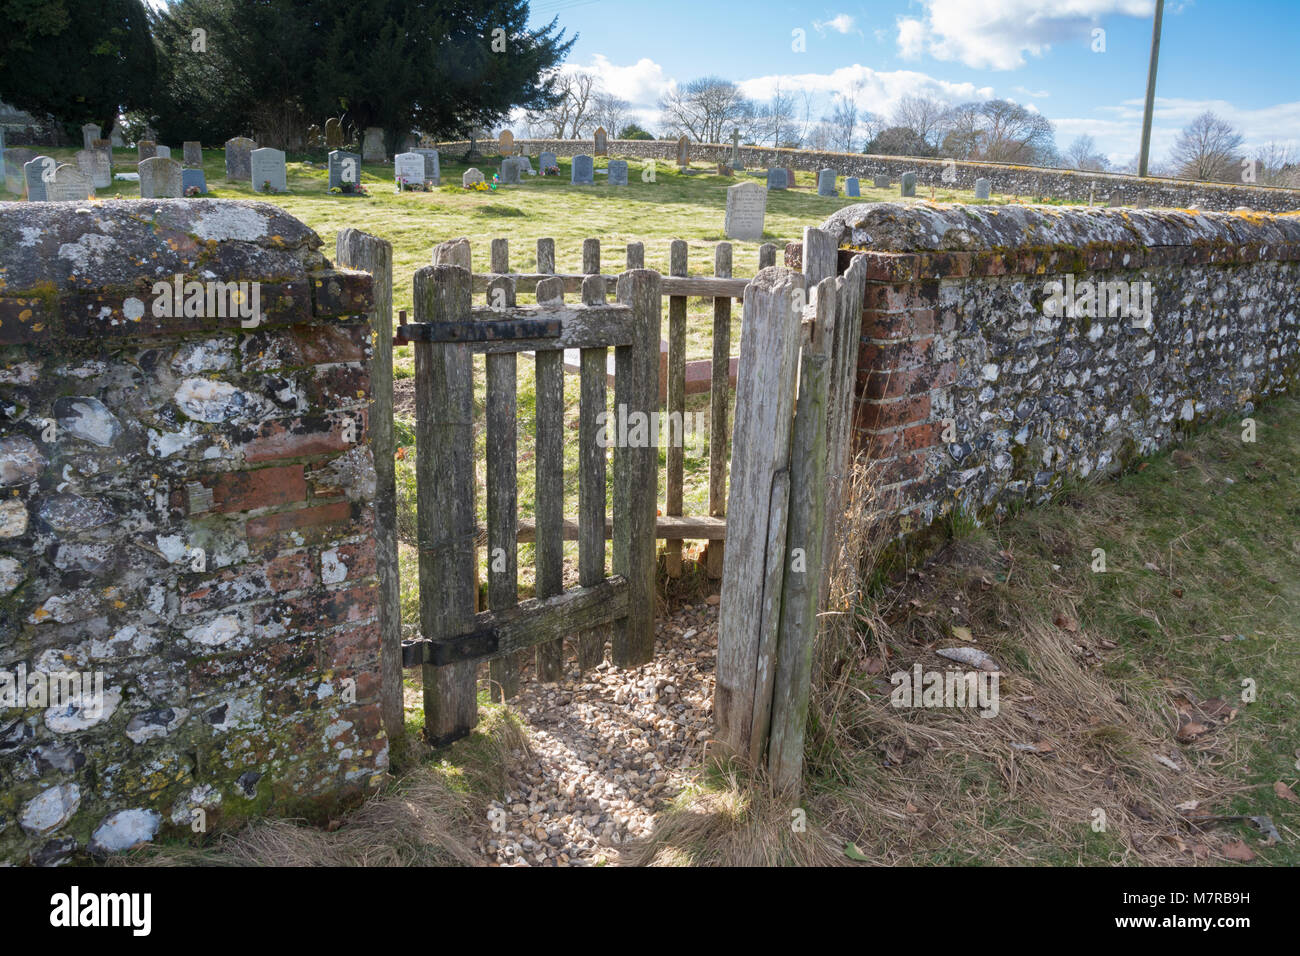 Baciare in legno gate - Ingresso alla chiesa parrocchiale del villaggio di Martin in Hampshire, Regno Unito Foto Stock